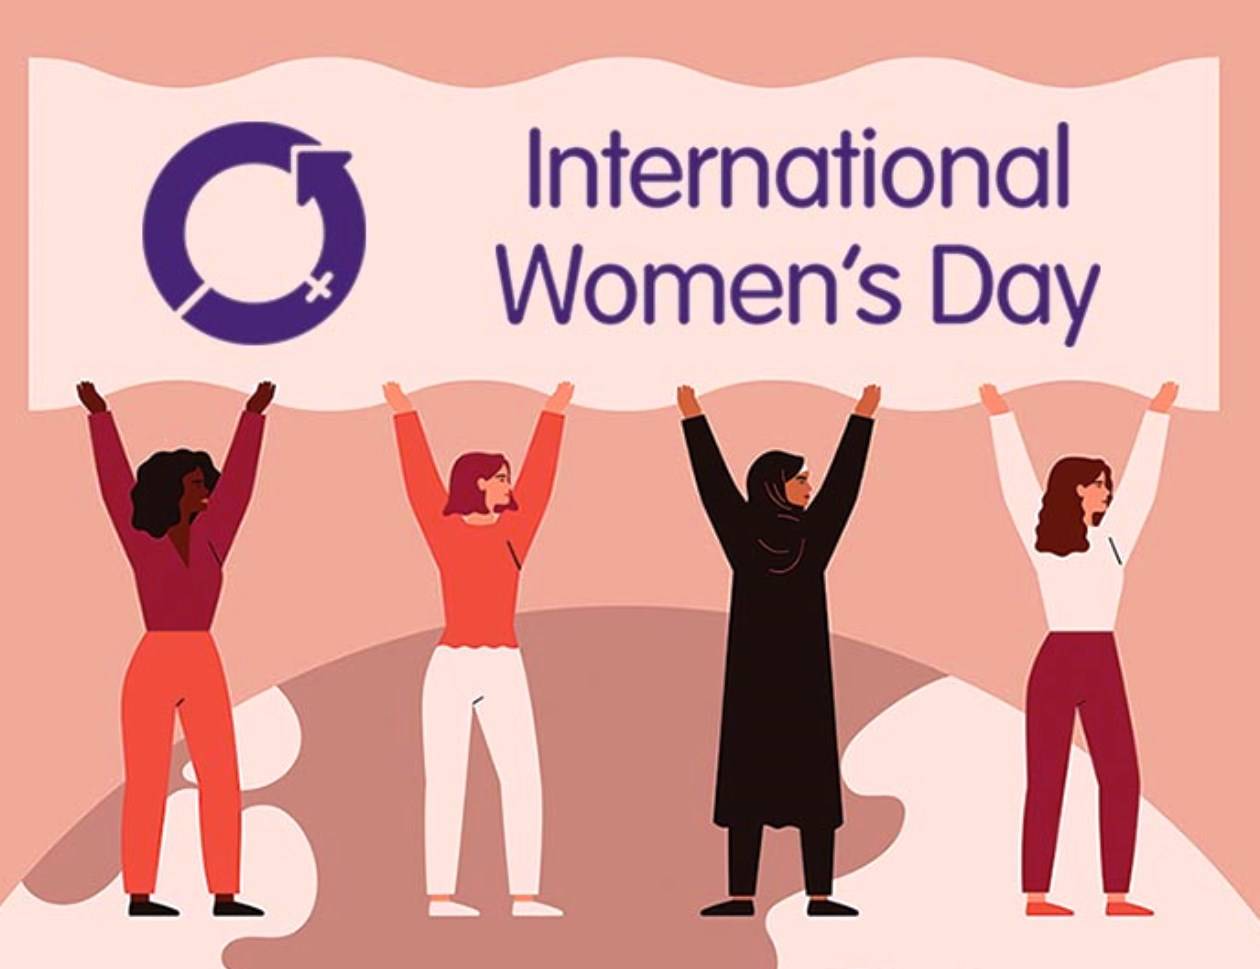 जाने 8 मार्च को ही क्यों मनाया जाता है अंतरराष्ट्रीय महिला दिवस